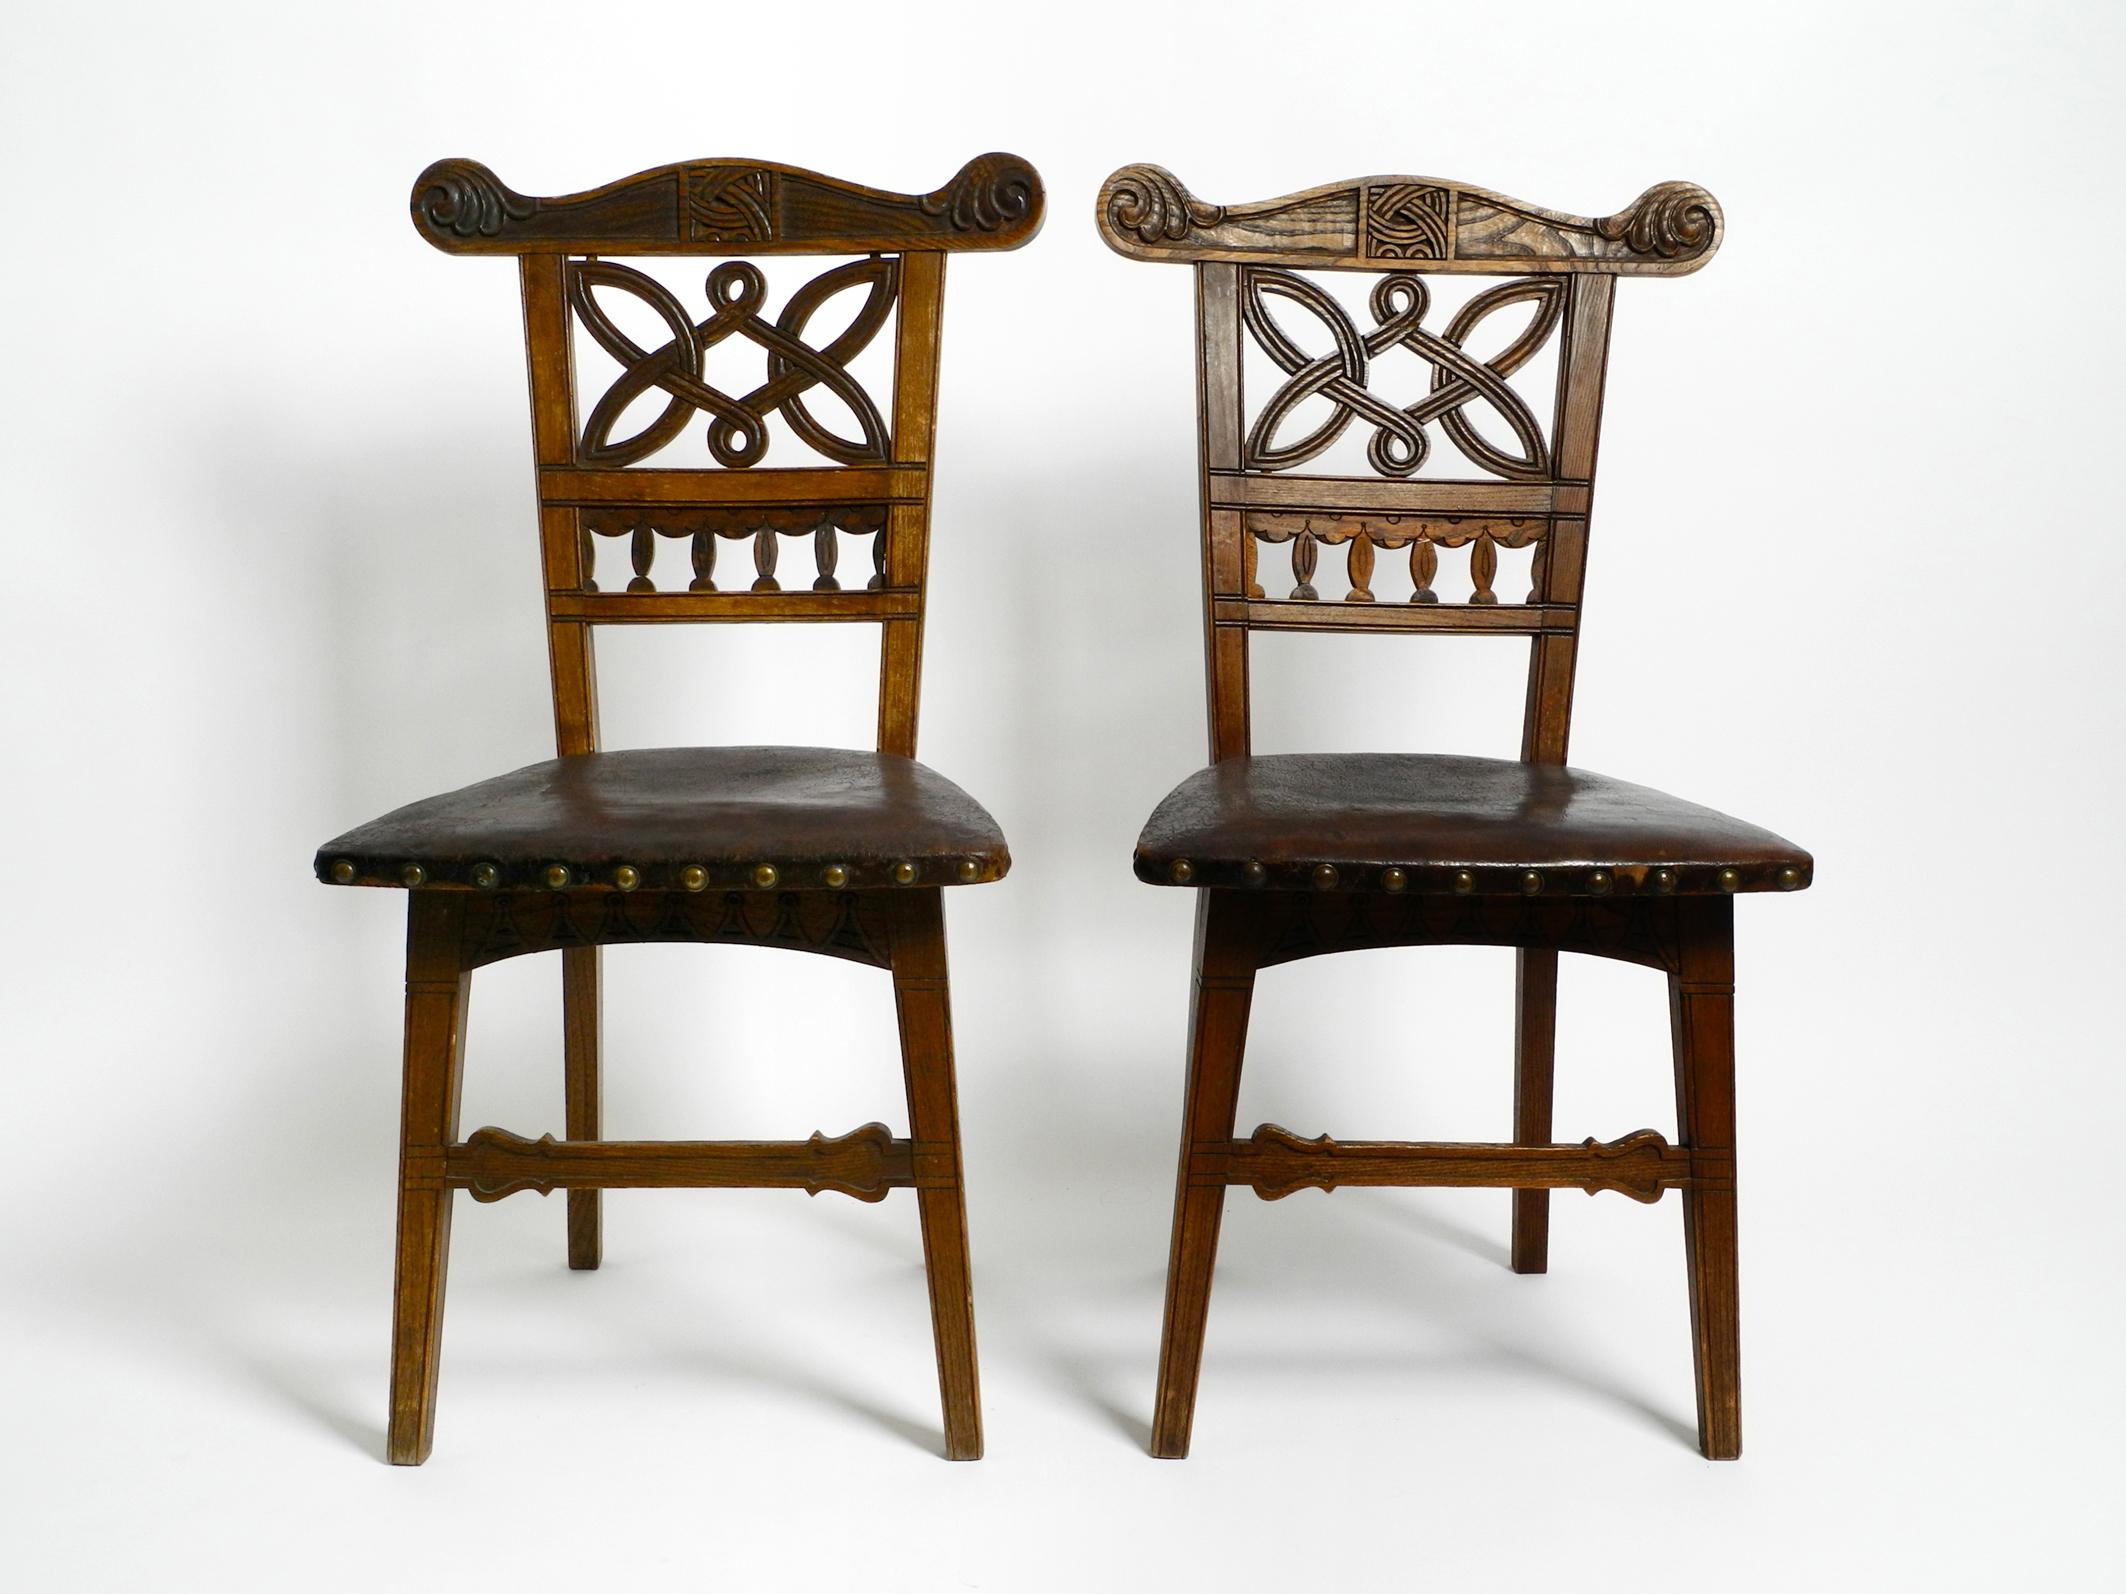 Deux belles chaises en bois Art Nouveau ornées.
Probablement fabriqué en France vers 1900.
Les sièges en cuir rivetés d'origine sont toujours là.
Superbe production, très complexe, avec de nombreux détails magnifiques.
Les chaises conviennent